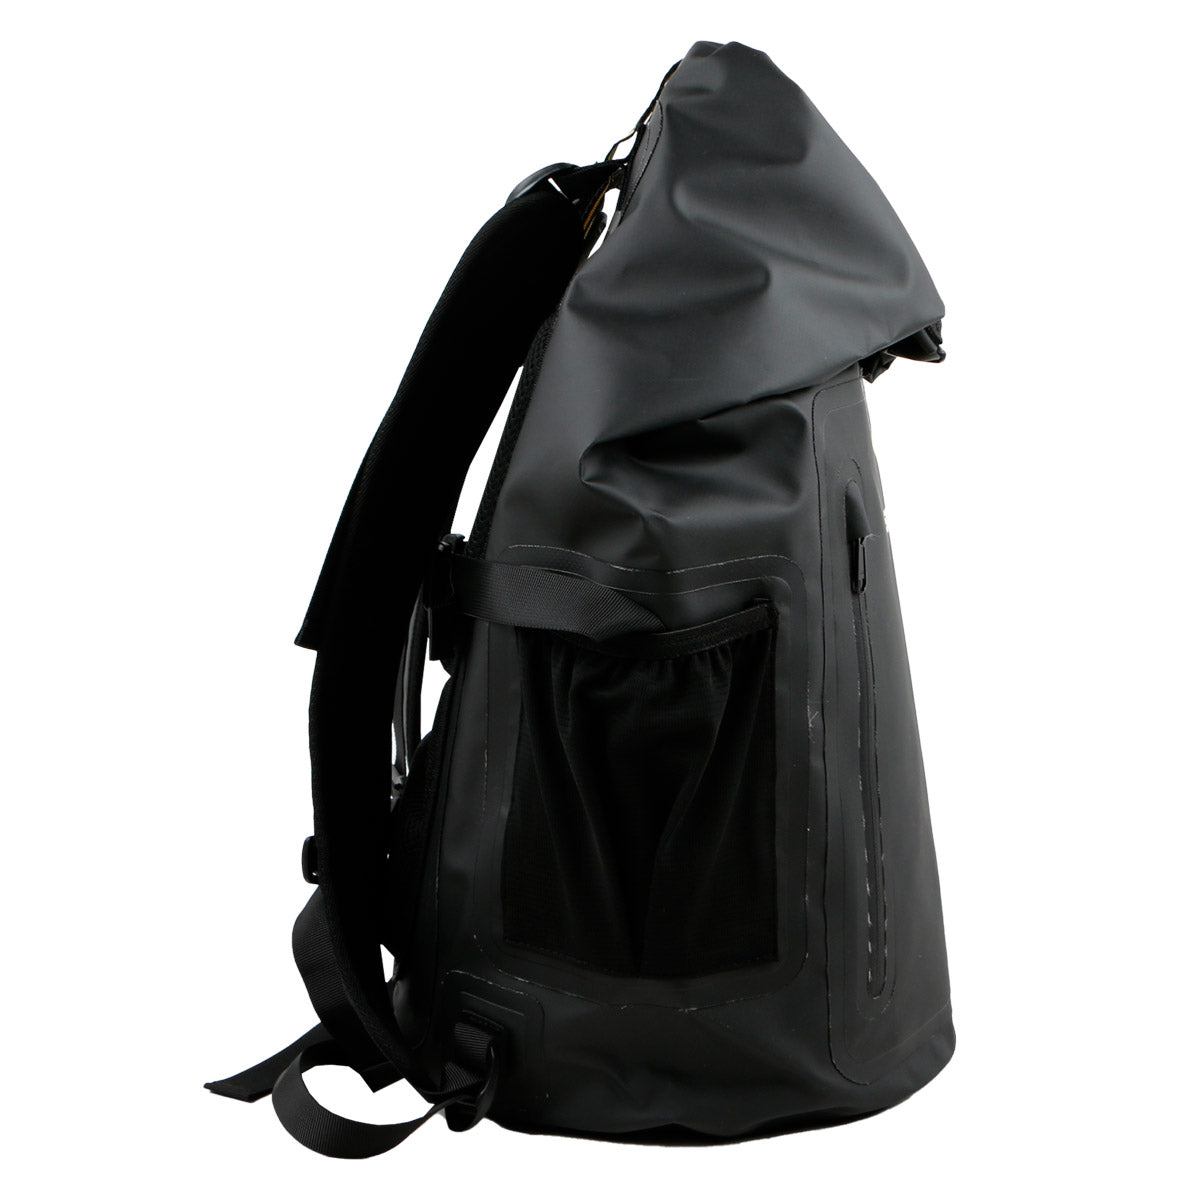 Sooruz - Waterproof Backpack